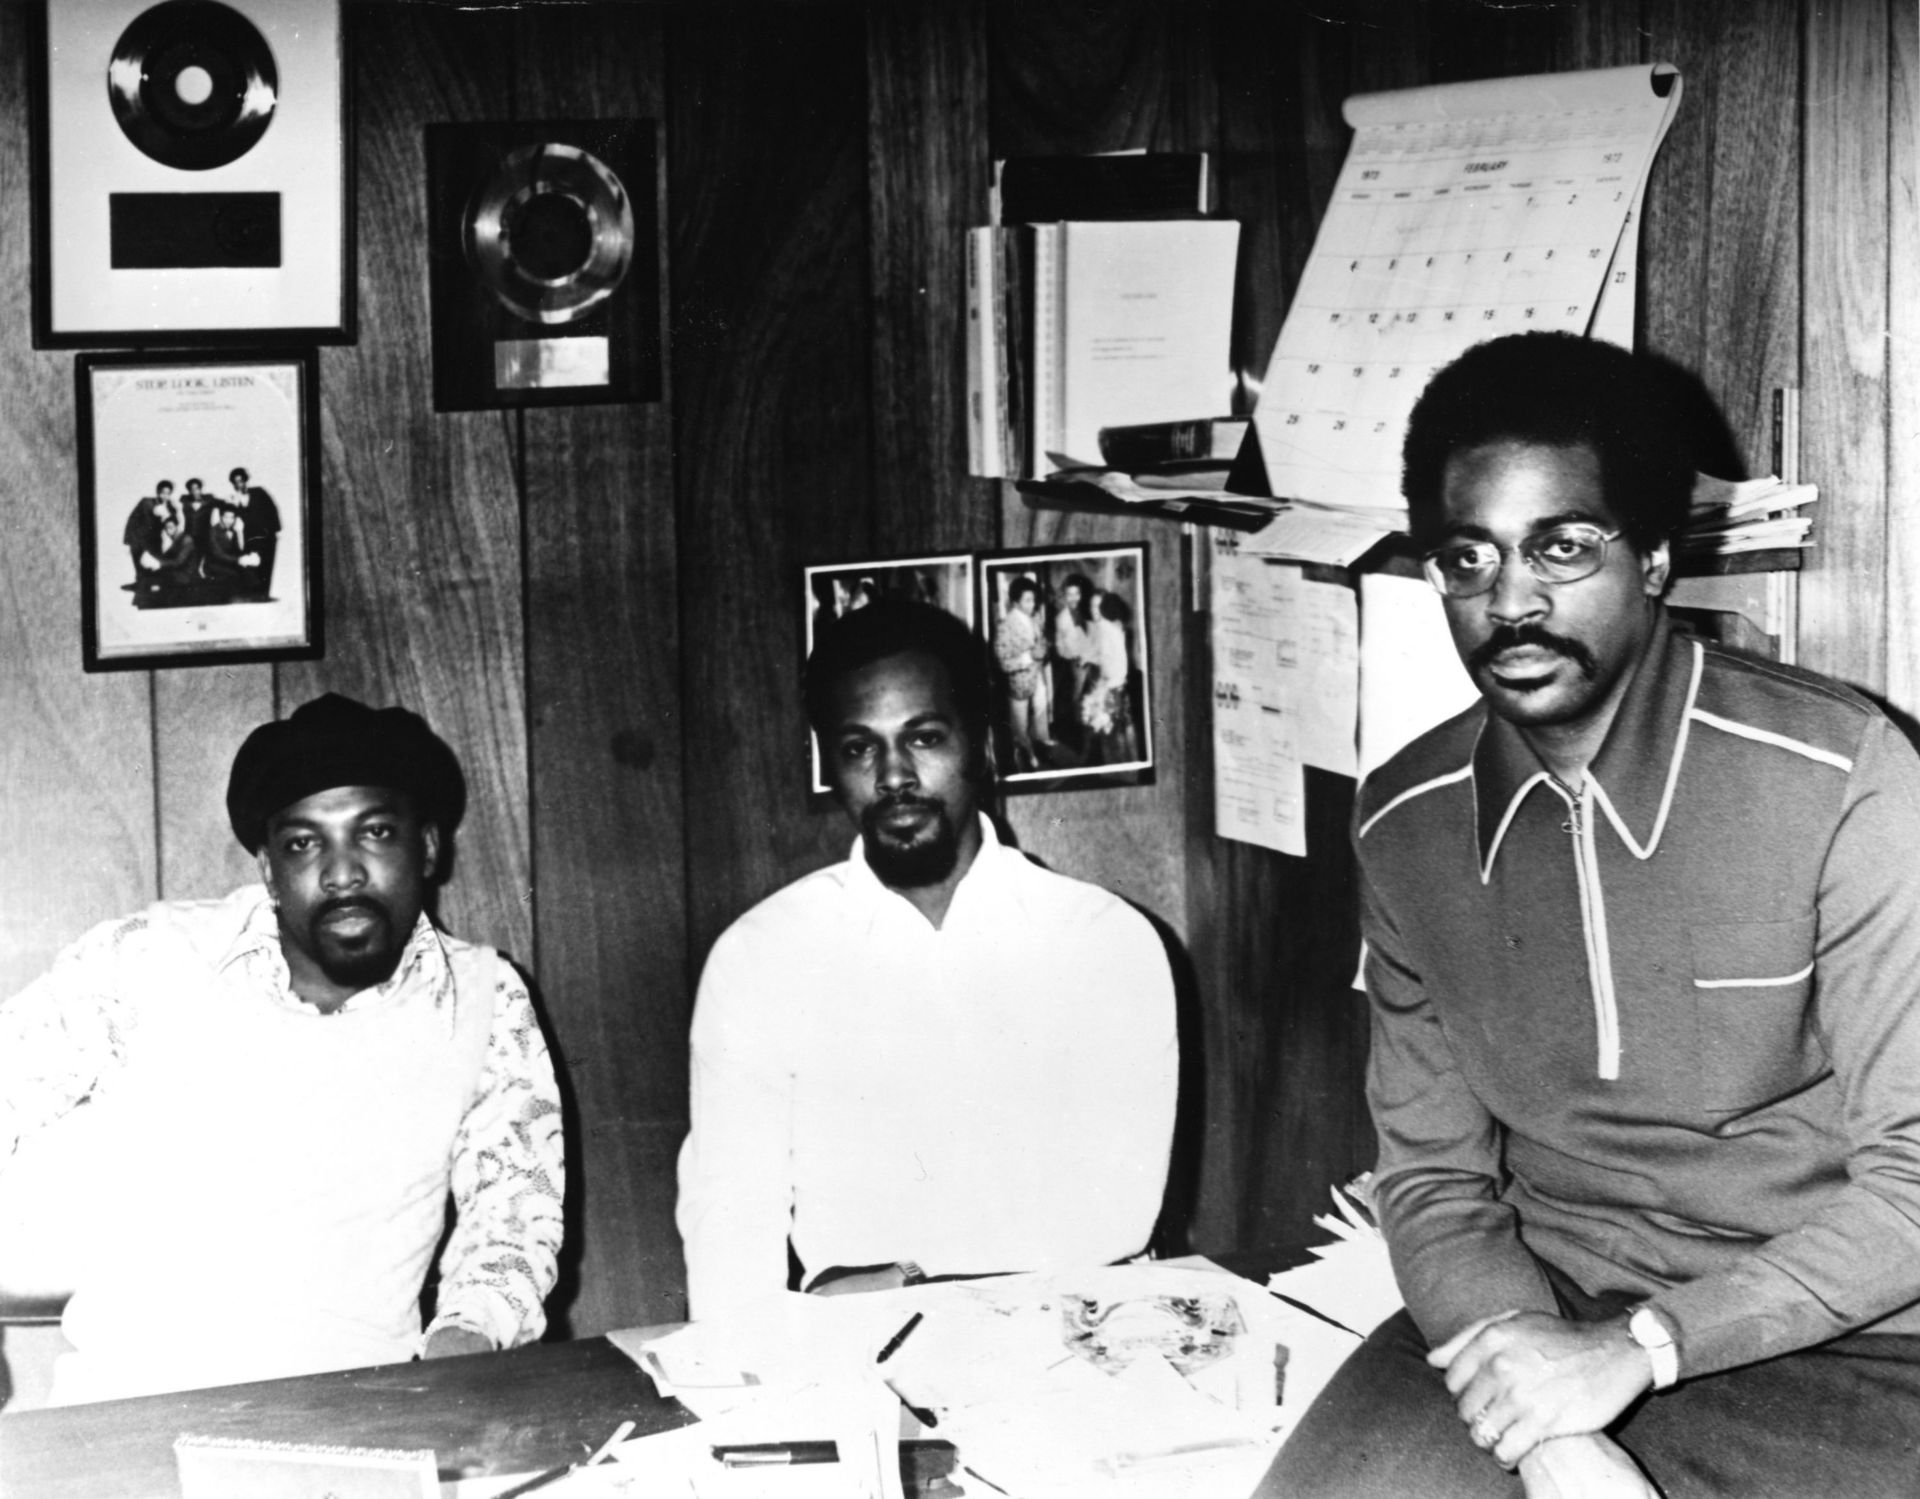 Leon Huff (gauche) et Kenny Gamble (droite) accueillent Thom Bellen février 1973 à Philadelphie, Pennsylvania.